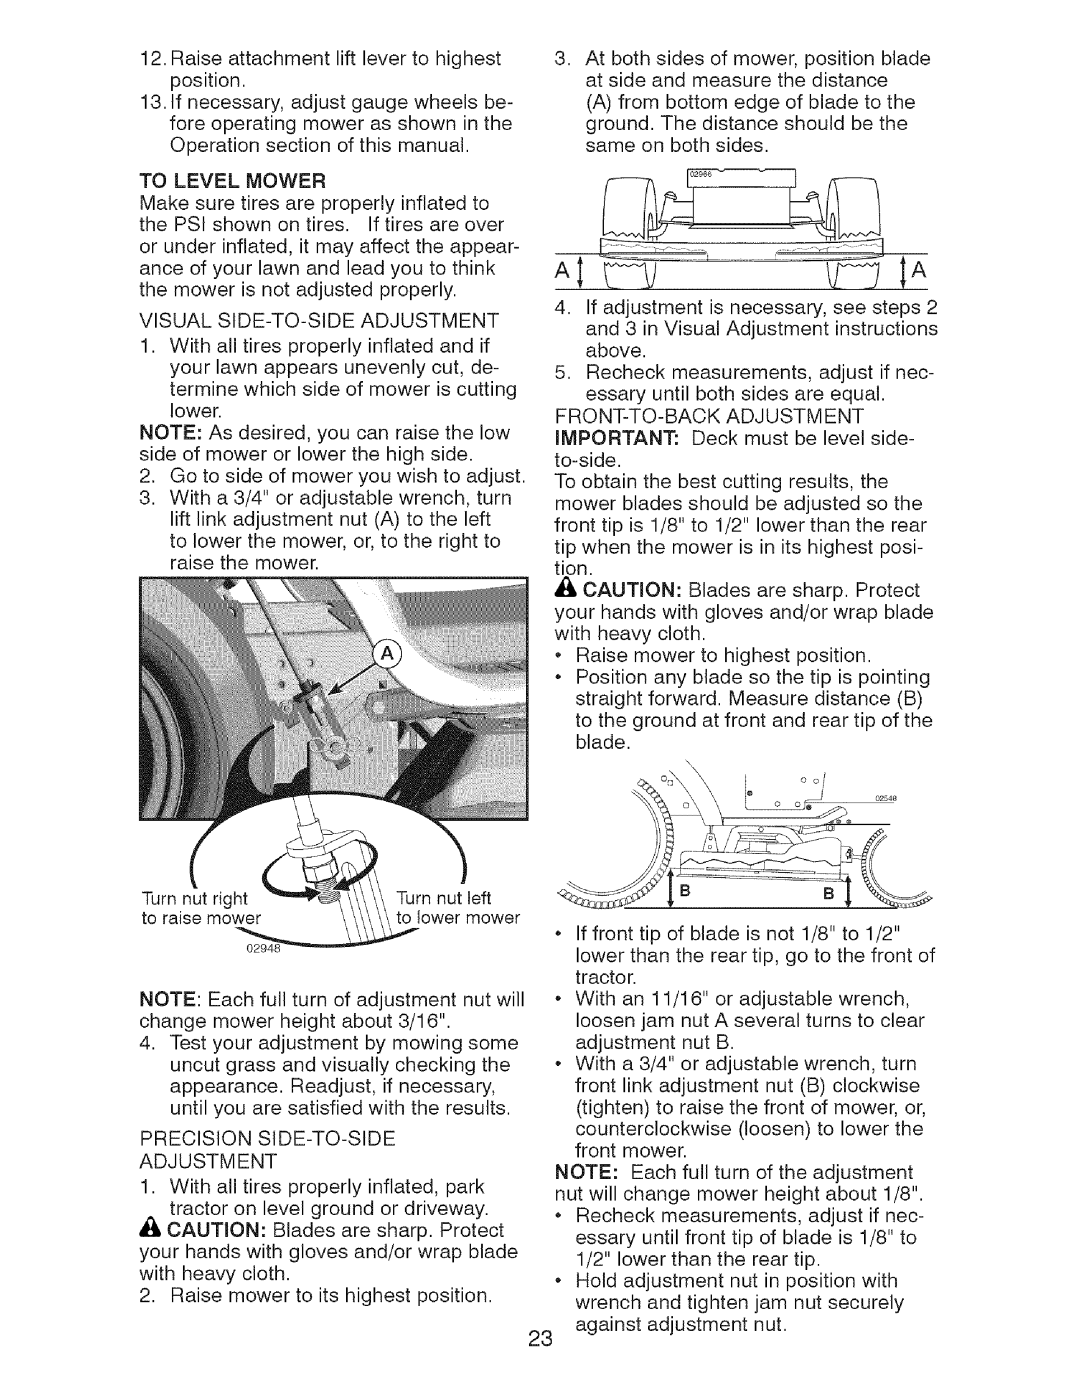 Craftsman 917.28726 owner manual Precision Side-To-Side Adjustment 